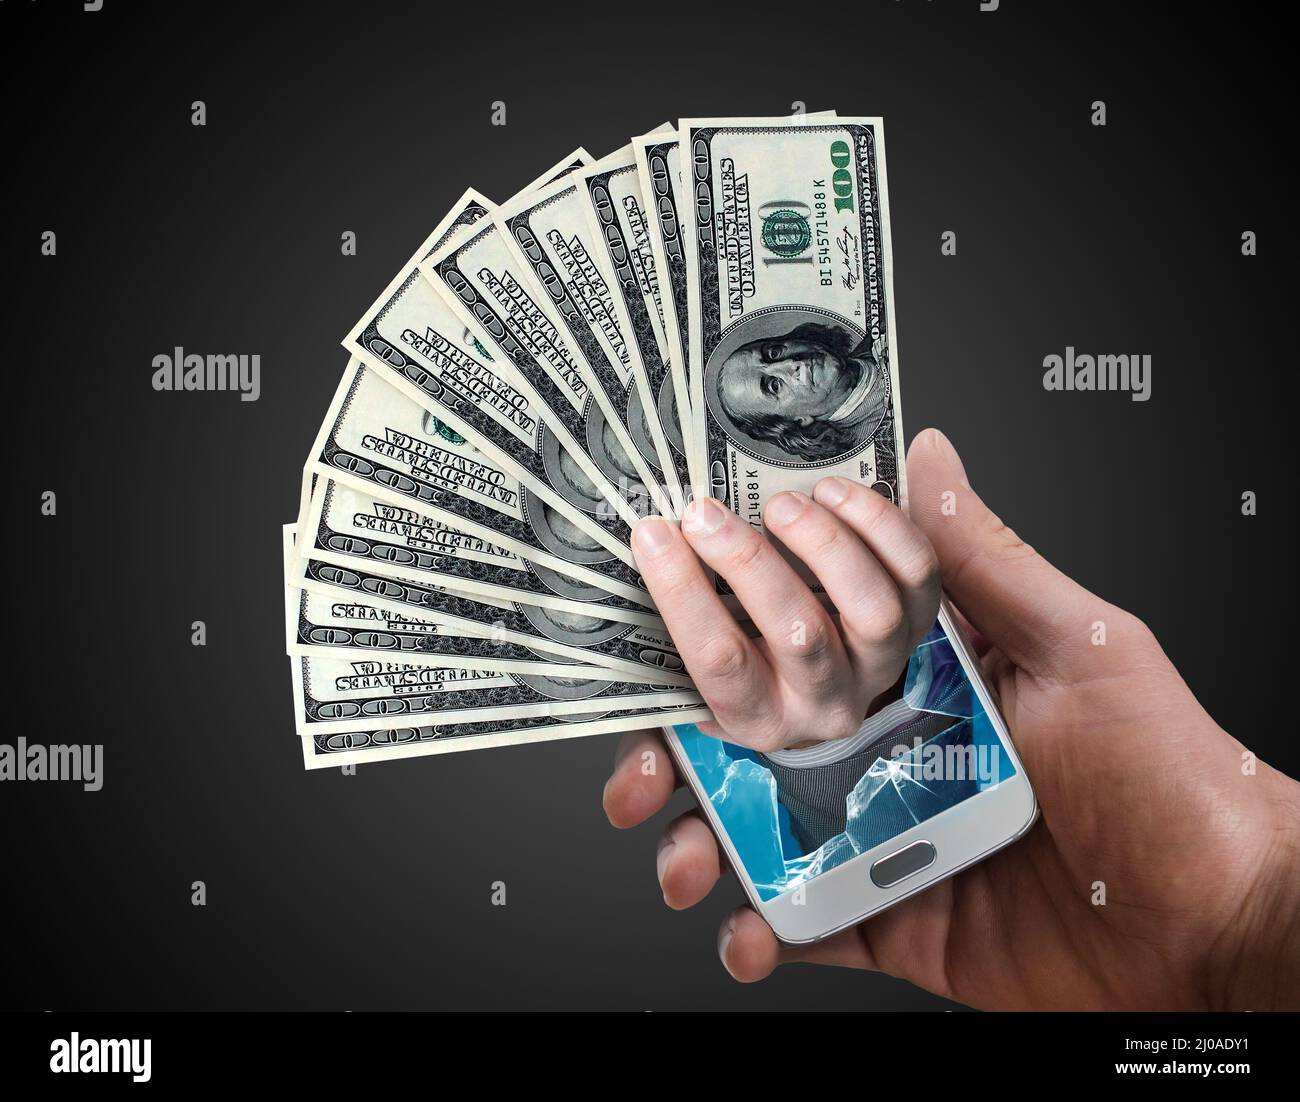 Mano sosteniendo dólar efectivo que aparece en la pantalla de un teléfono. Concepto de pago o recompensa en línea. Foto de stock